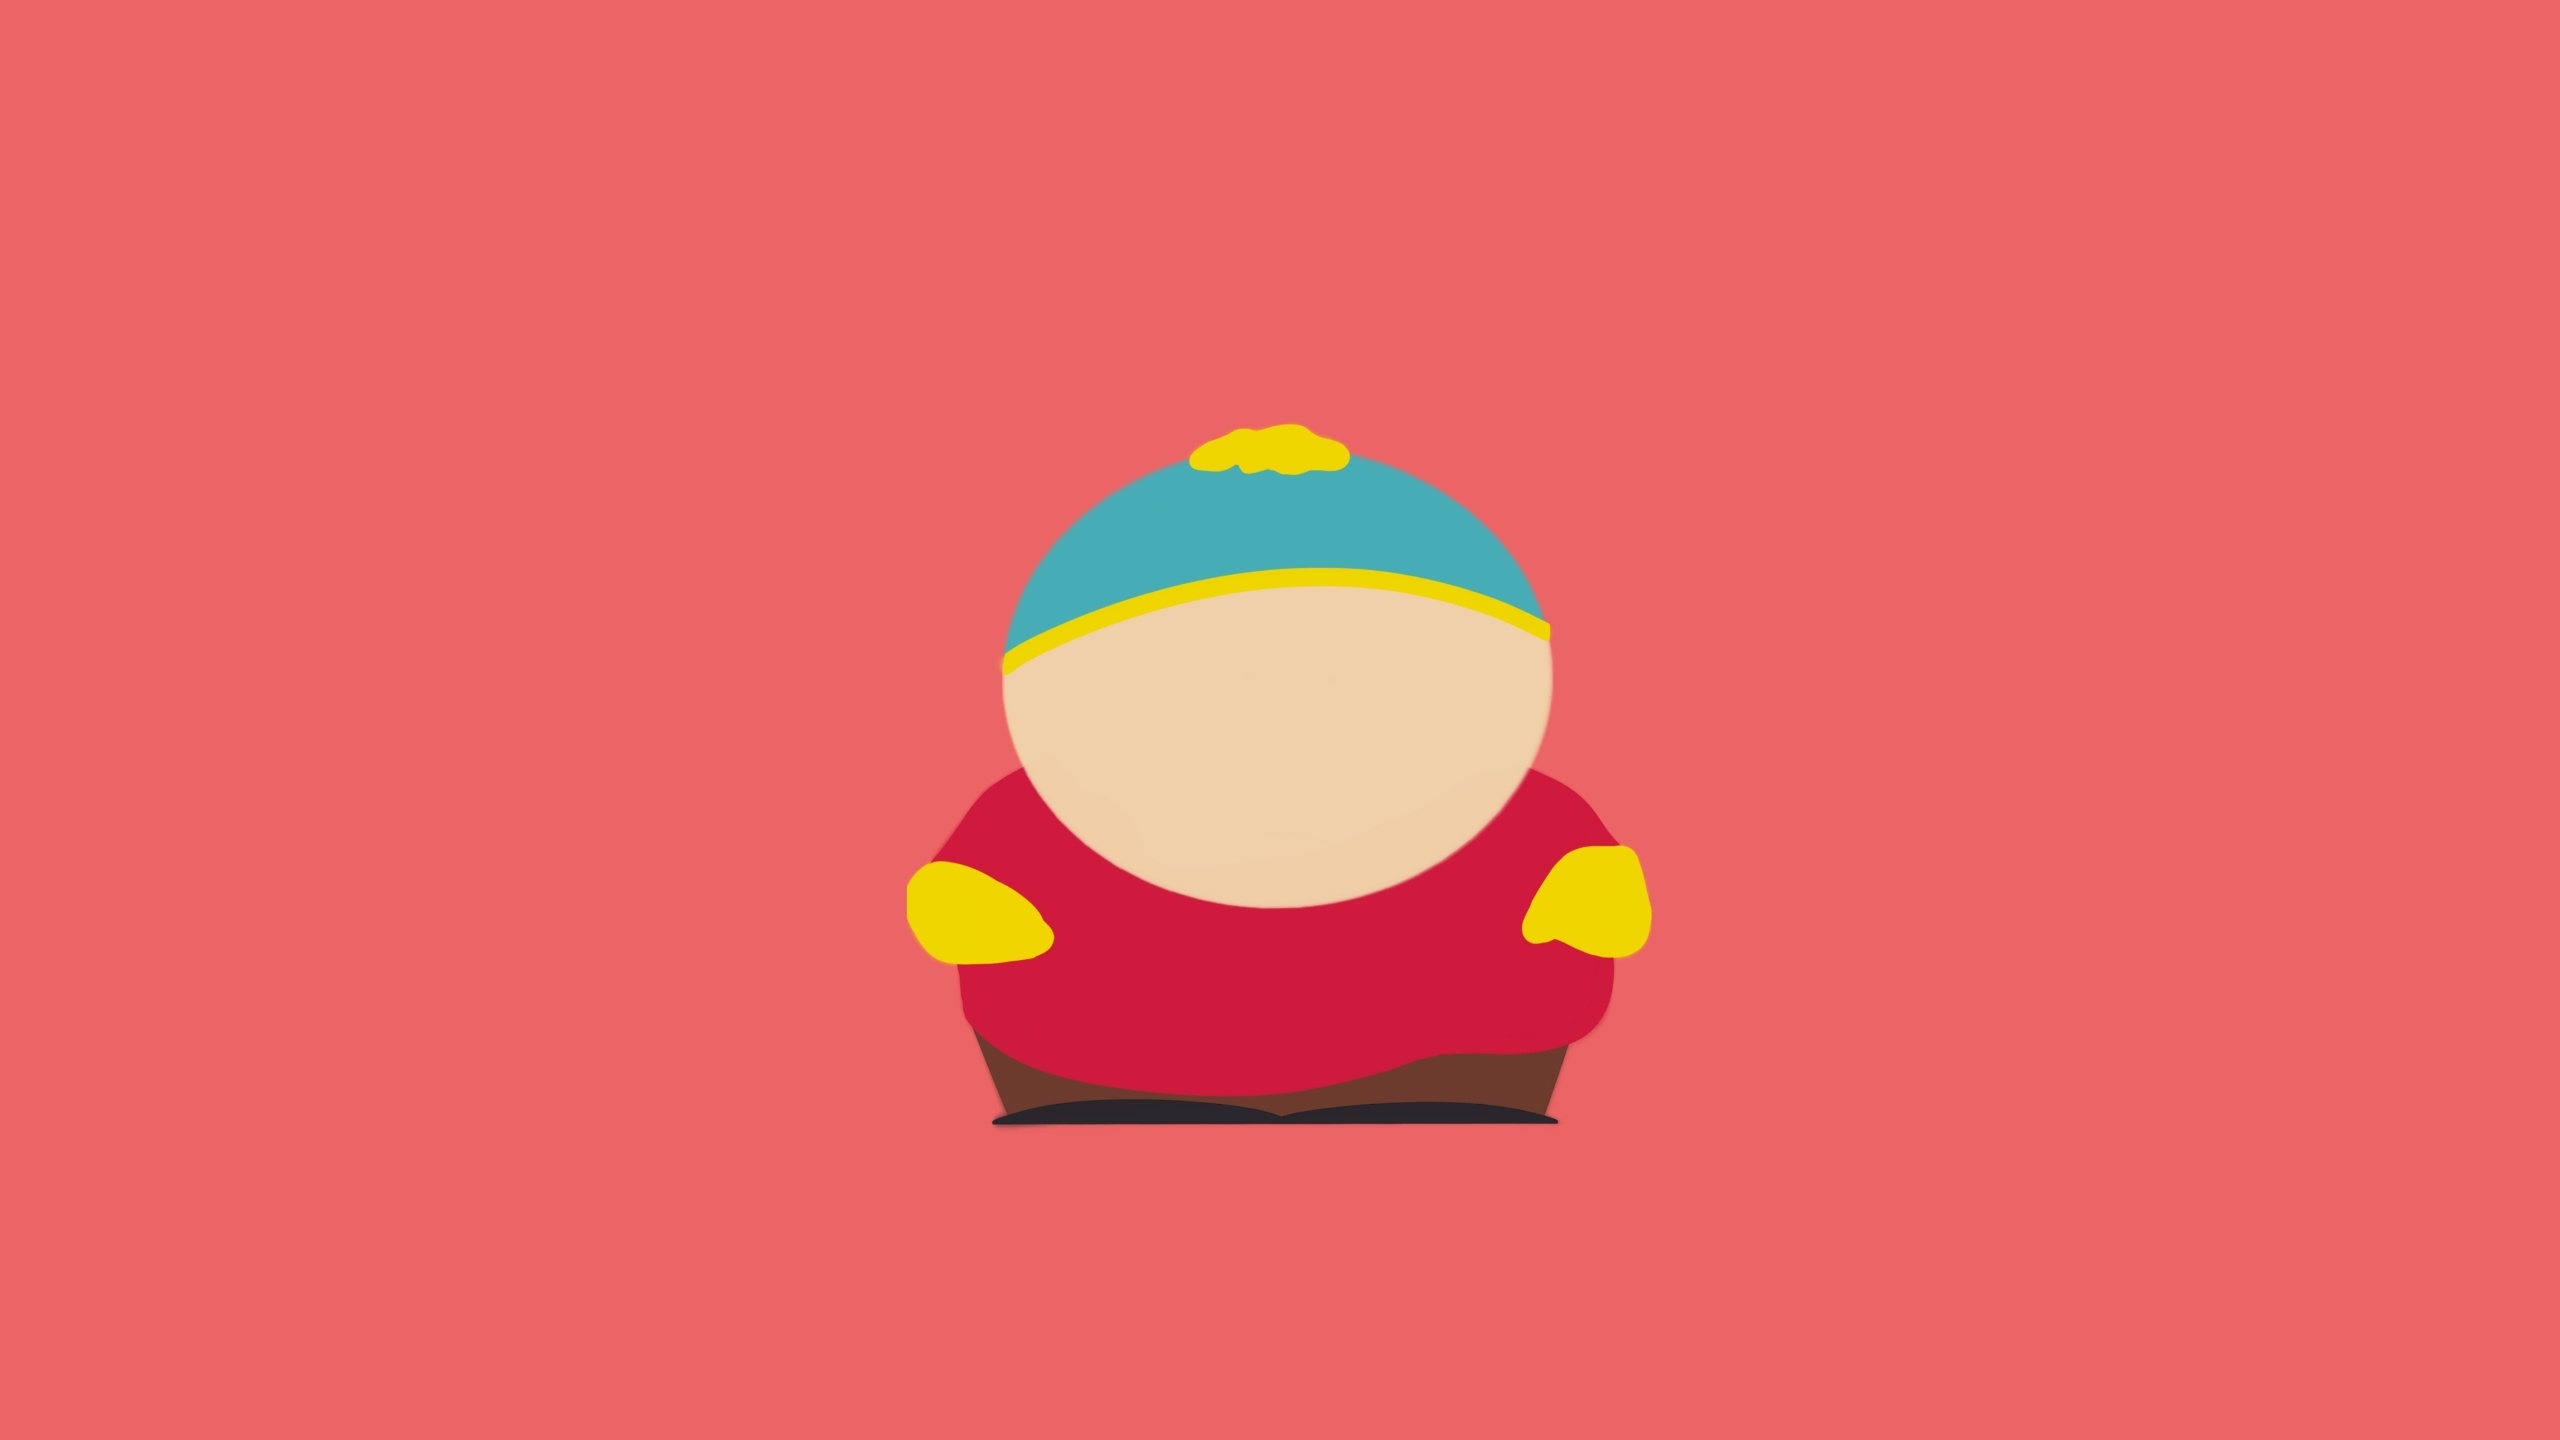 Eric Cartman South Park Minimal 1440p Resolution